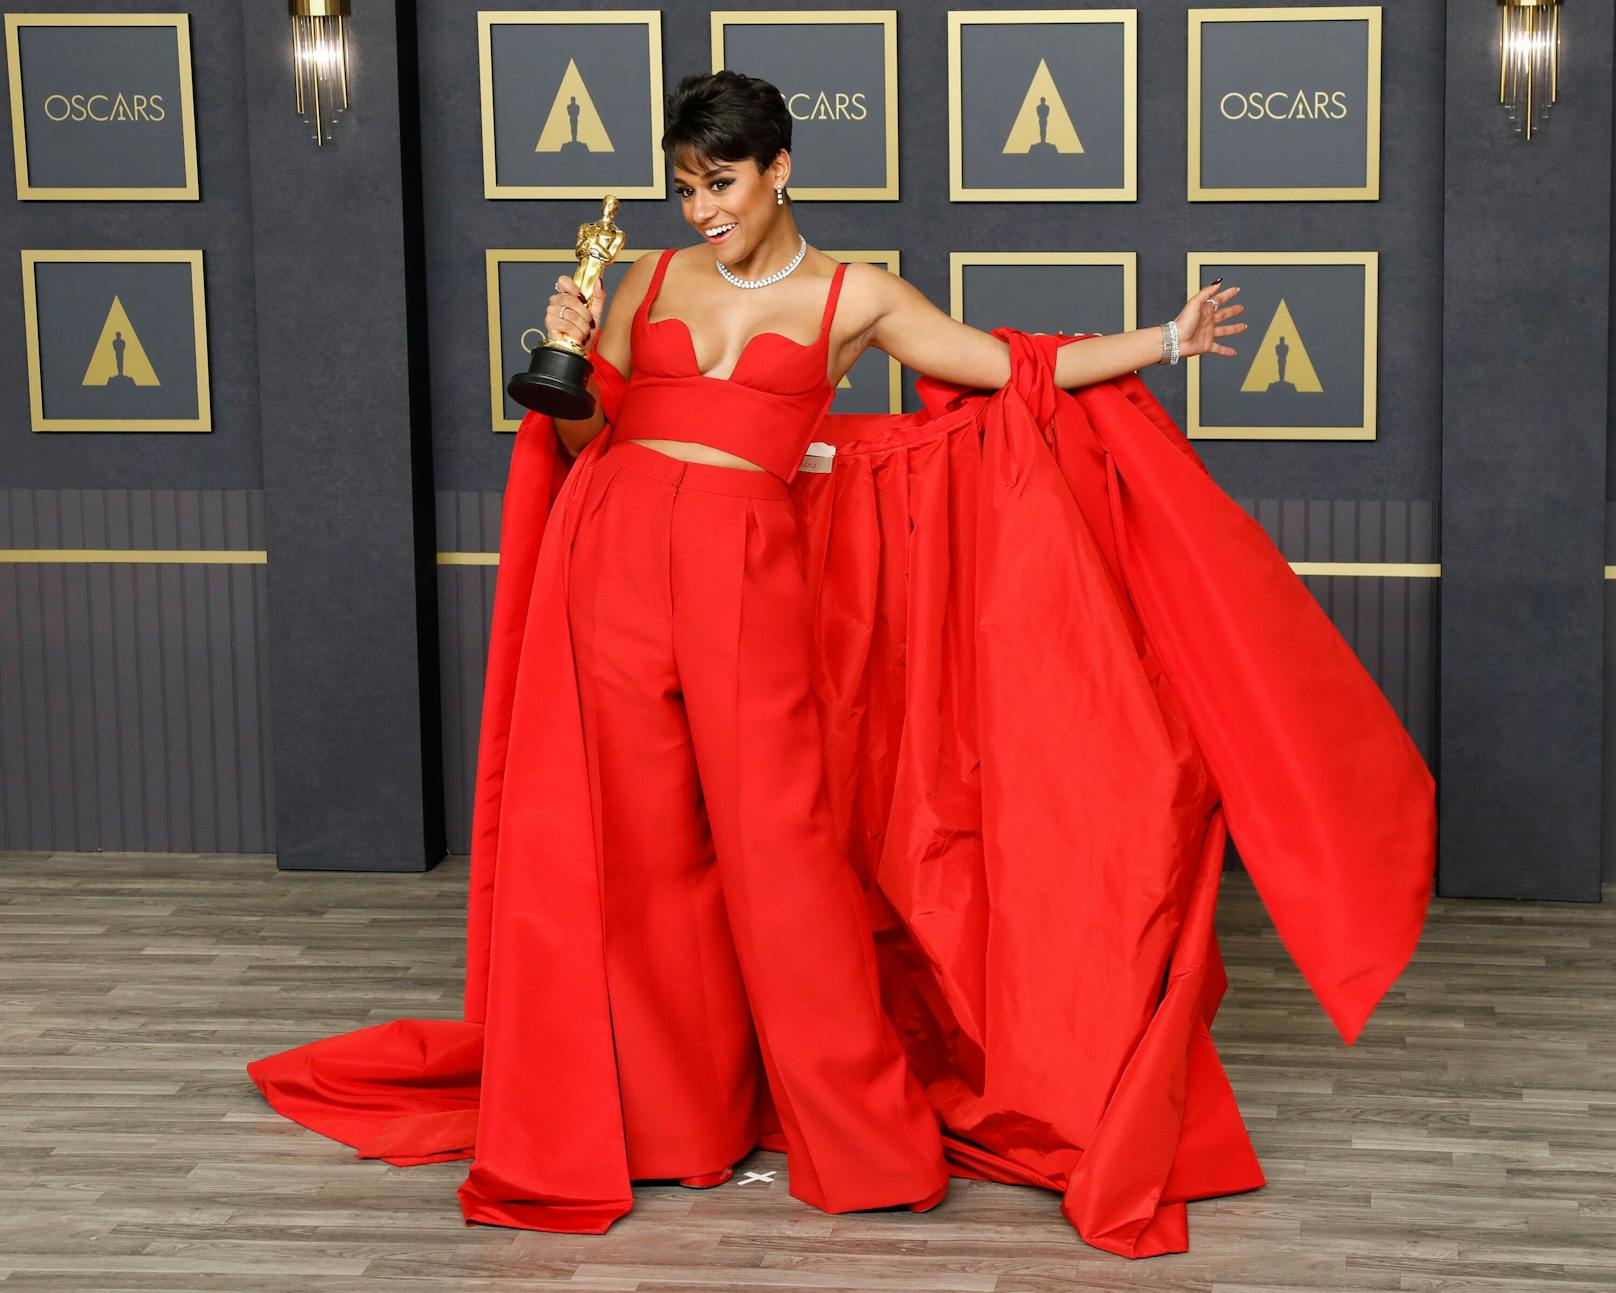 Schauspielerin Ariana DeBose tauchte bei der Oscarverleihung in diesem freizügigen Kleid auf. Sie gewann einen Oscar für ihre Rolle in "West Side Story".